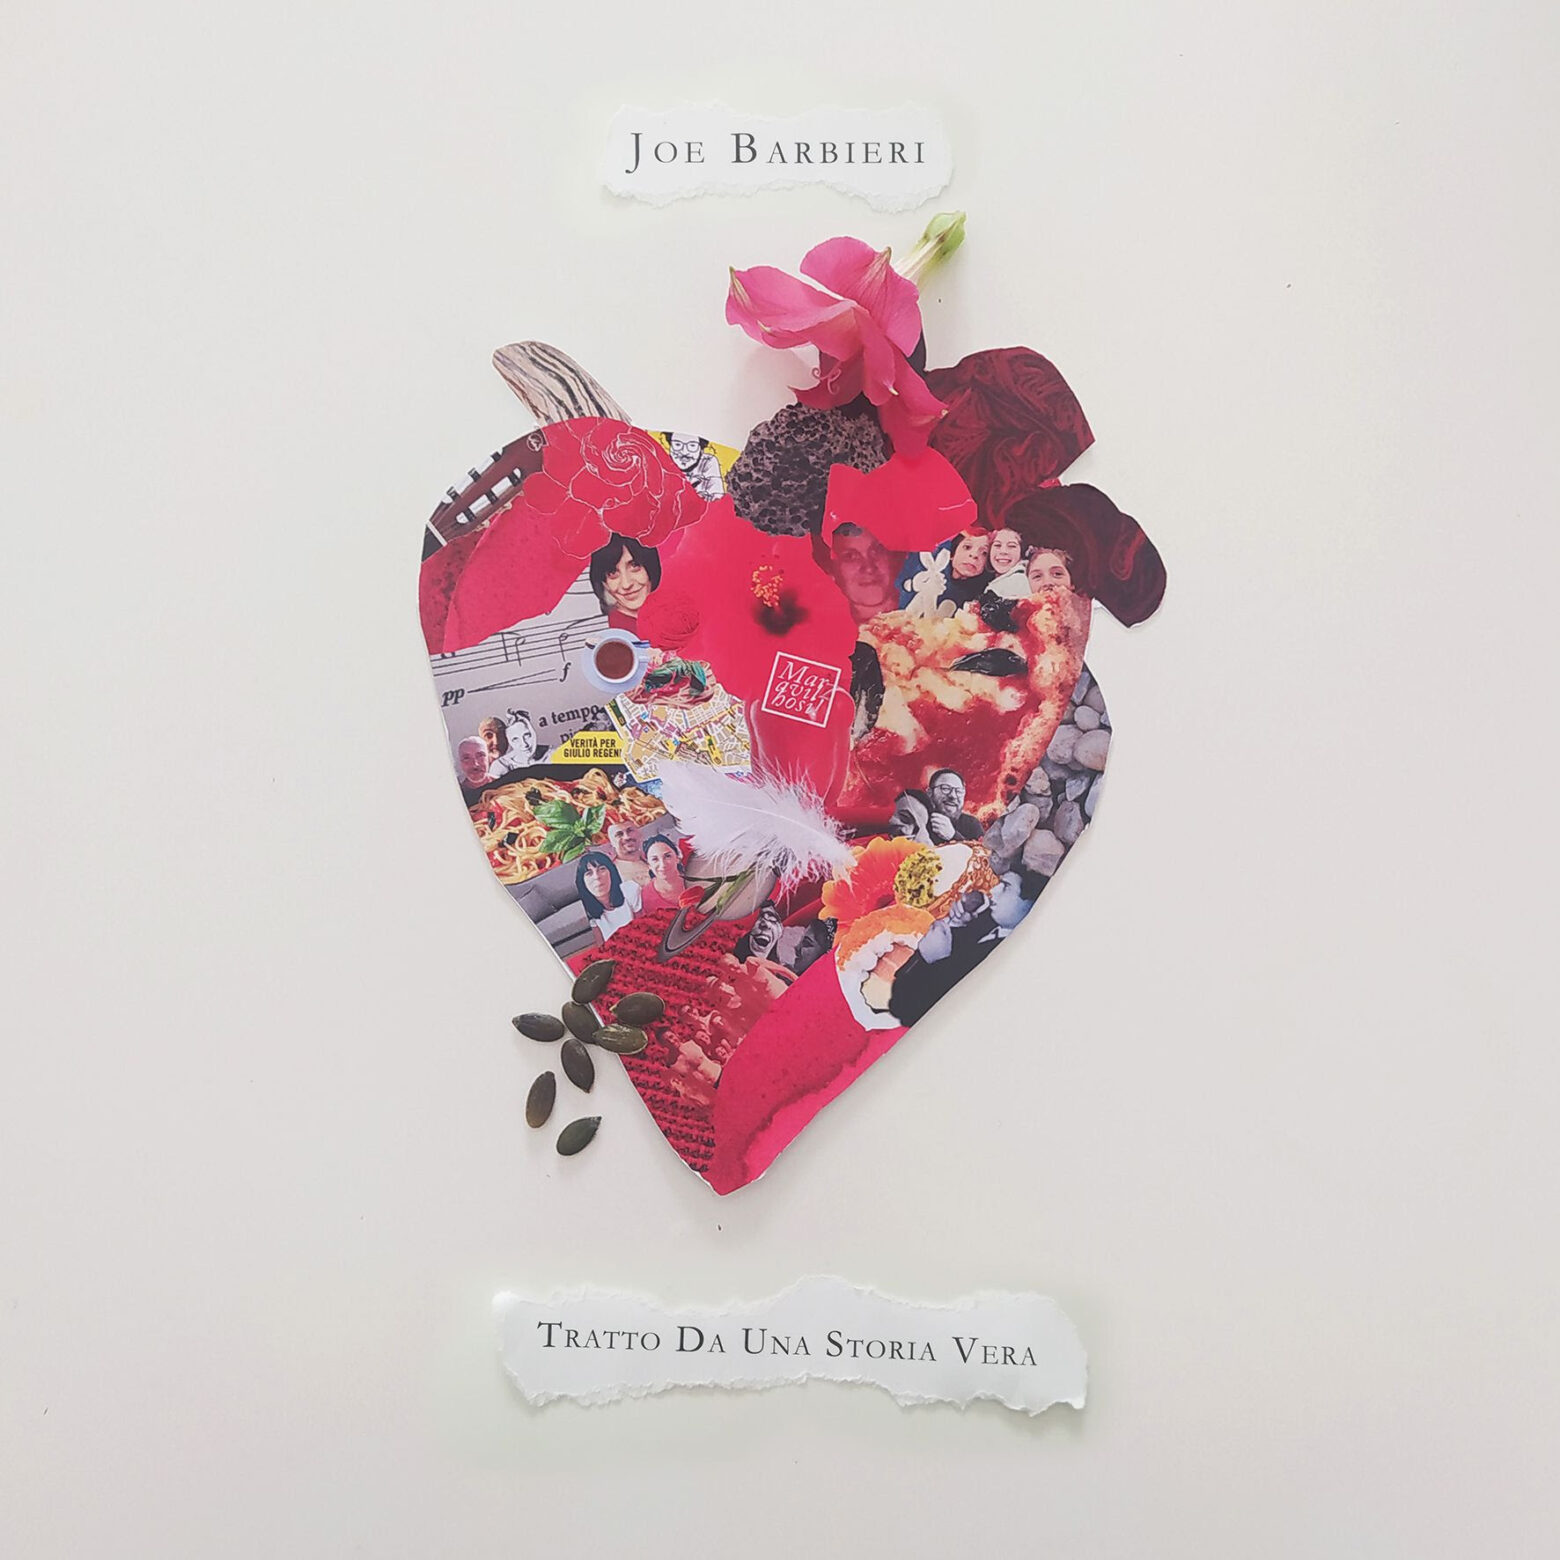 Venerdì 16 aprile esce  in digitale e negli stores “TRATTO DA UNA STORIA VERA”, il nuovo album di Joe Barbieri